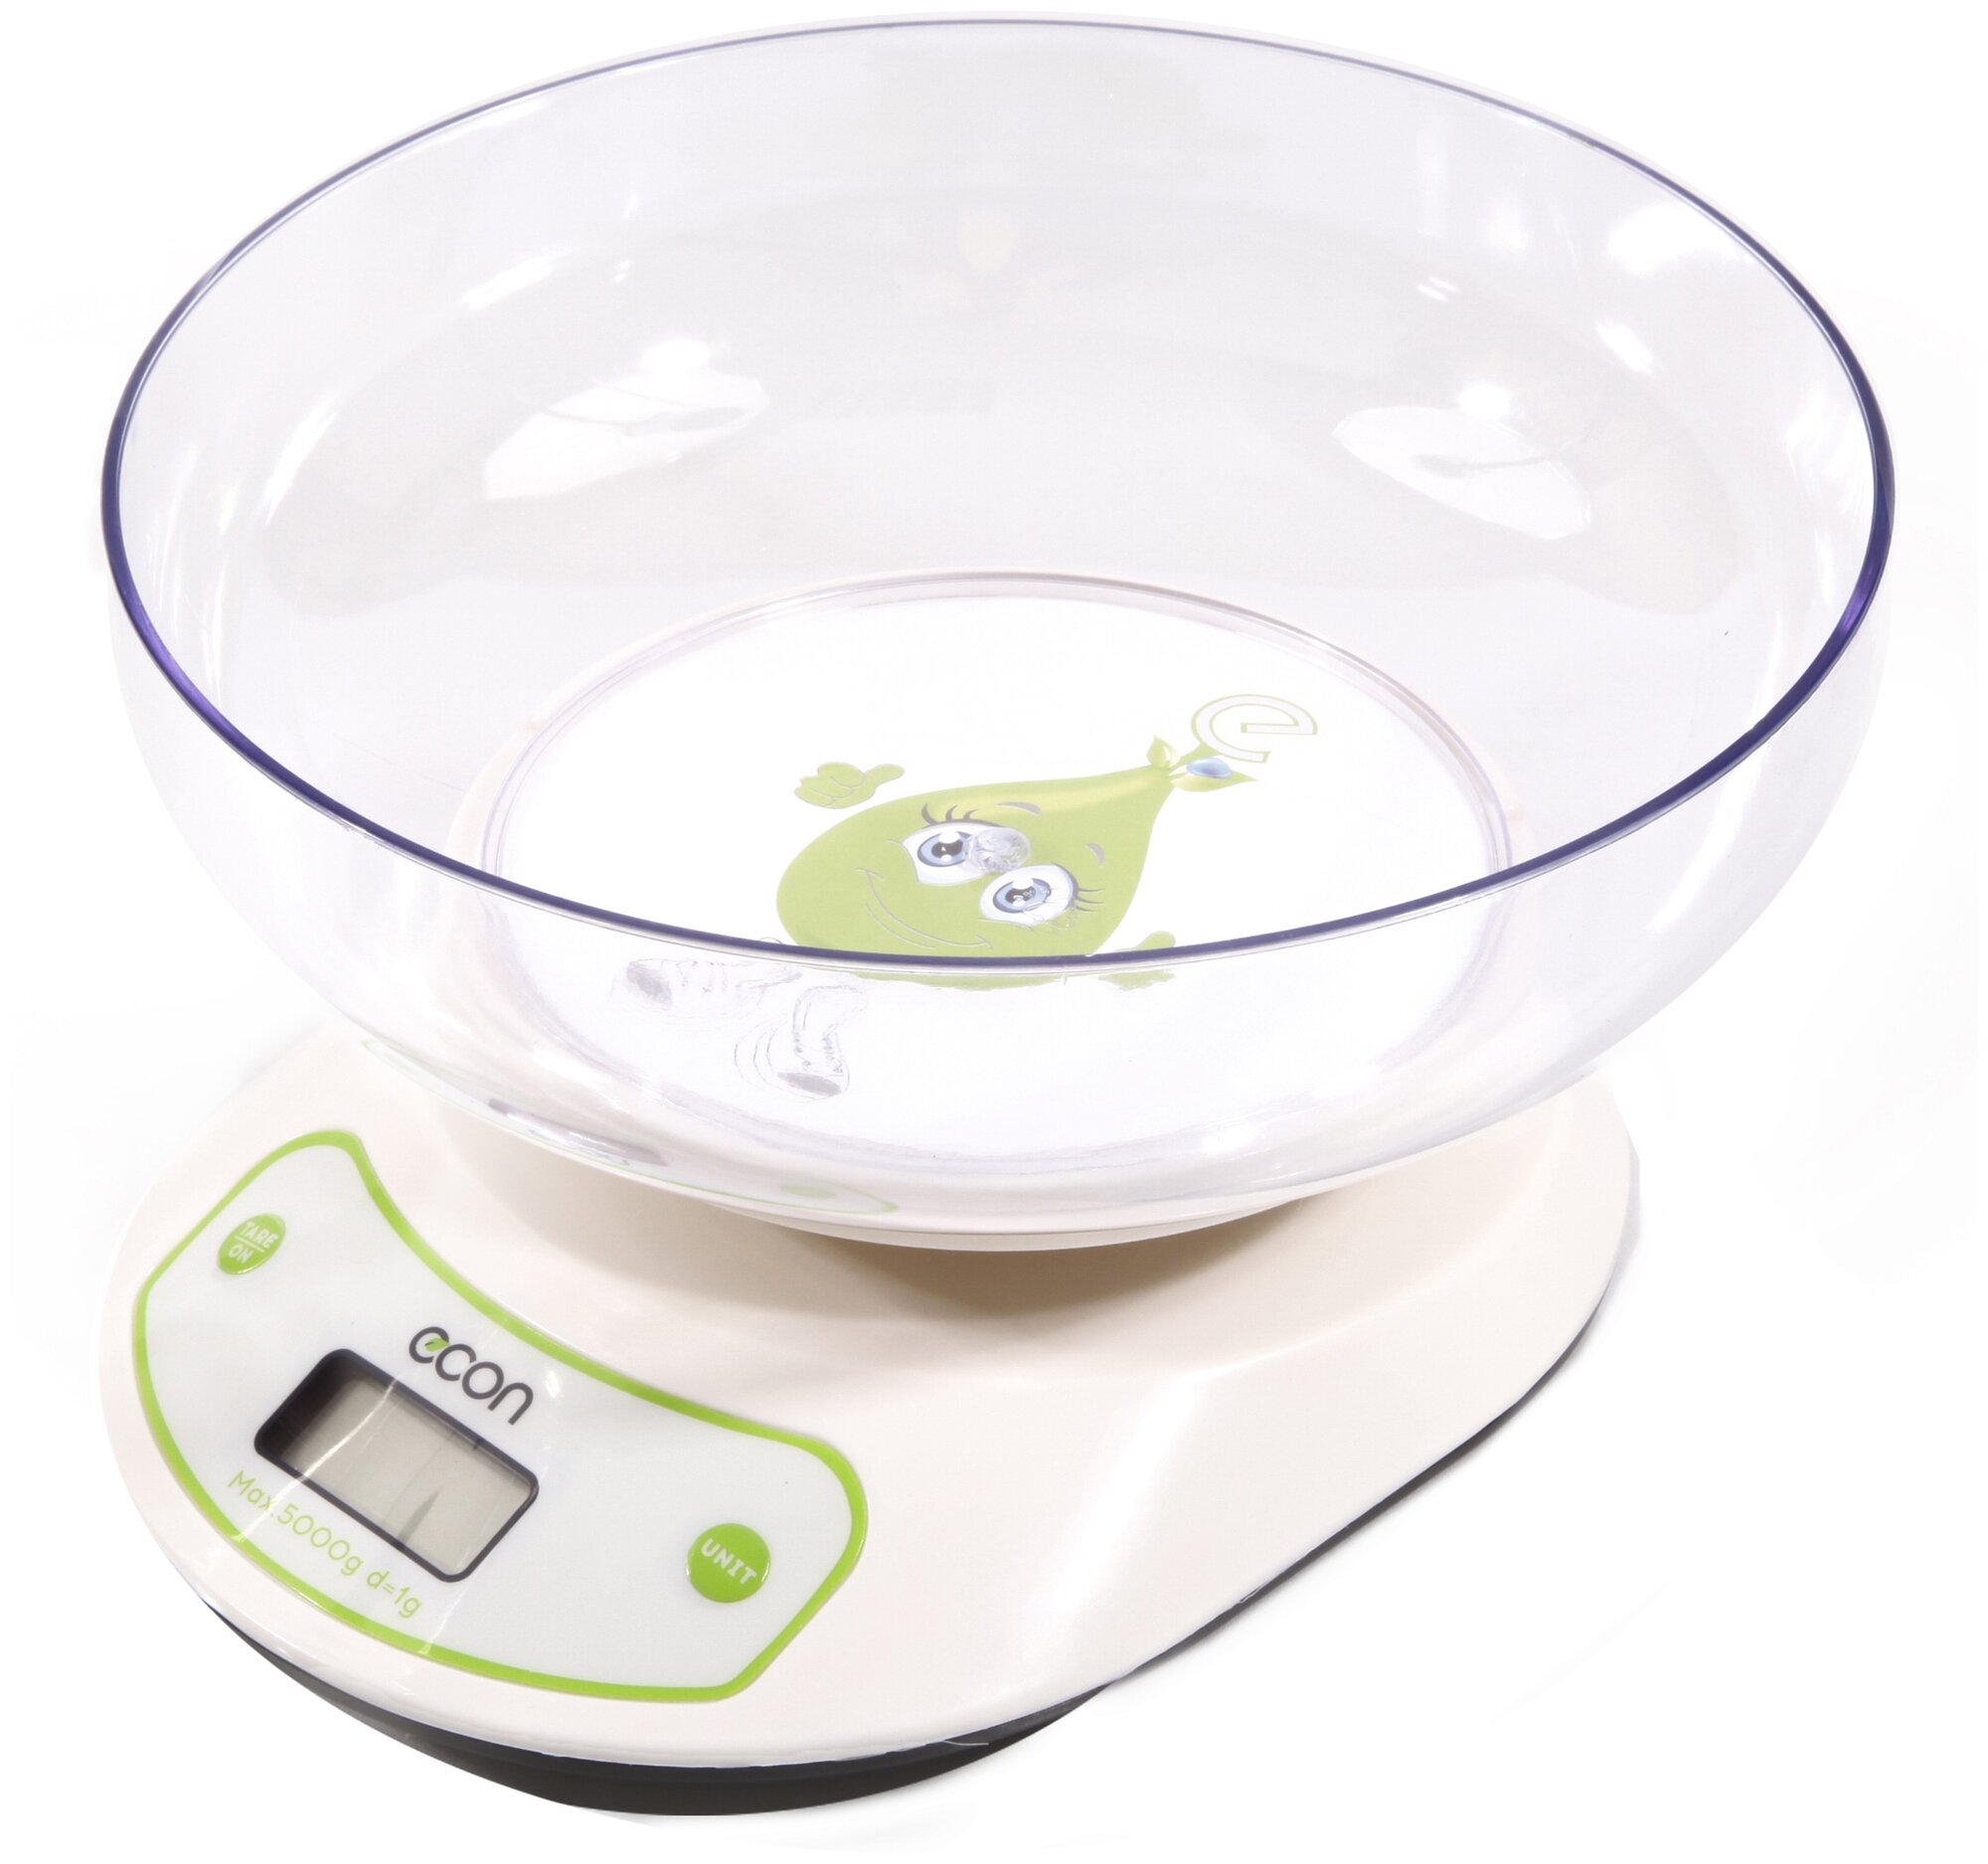 Электронные кухонные весы ECON электронные, со съемной чашей, с батарейками, белый, зеленый